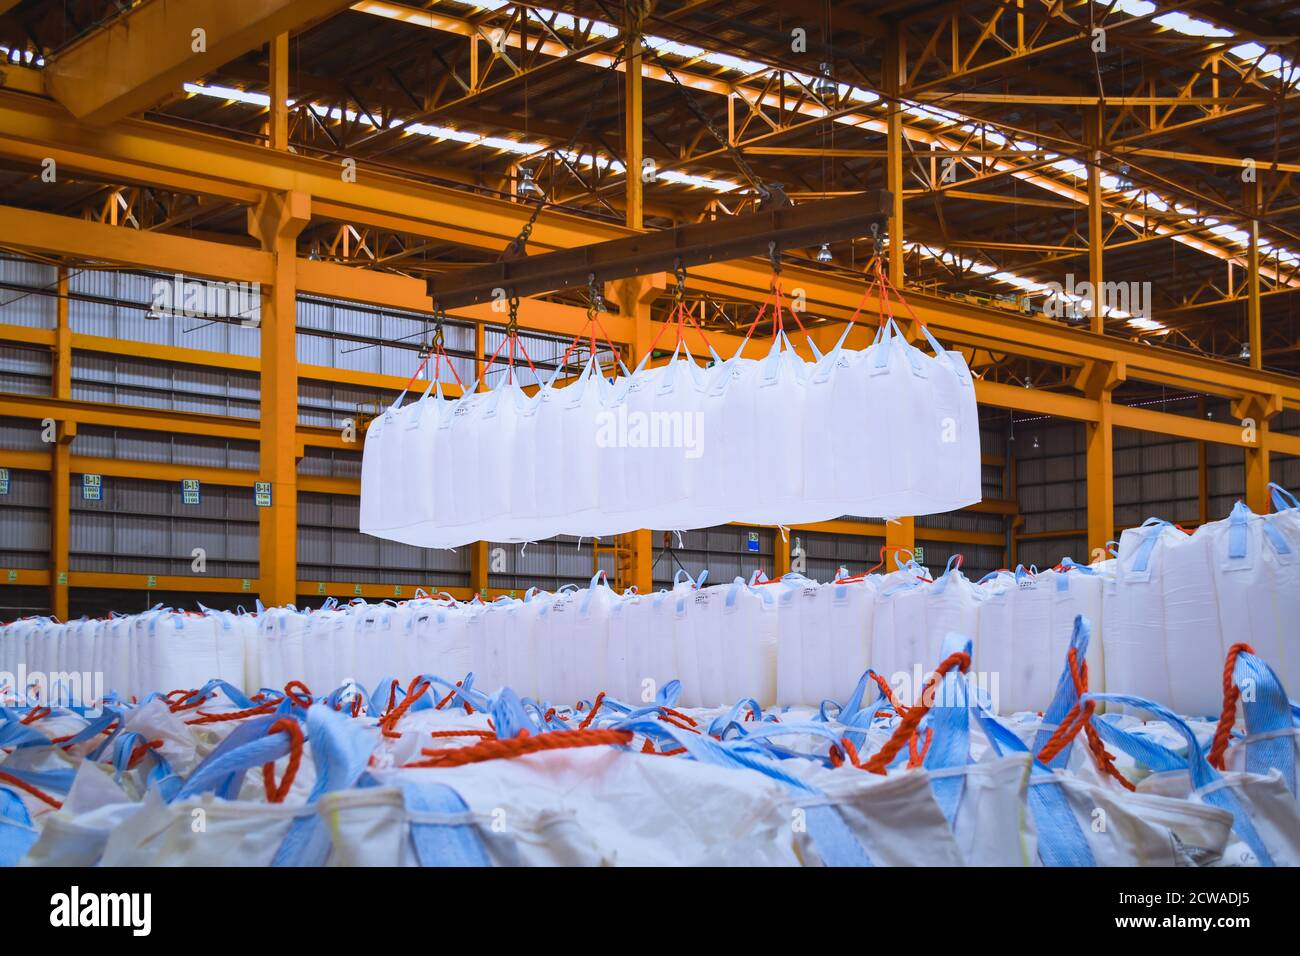 Un pont roulant lève les sacs géants de tapioca à l'aide d'une barre de répartition dans l'entrepôt de stockage. Chargement en vrac dans un équipement de manutention de sacs jumbo. Banque D'Images